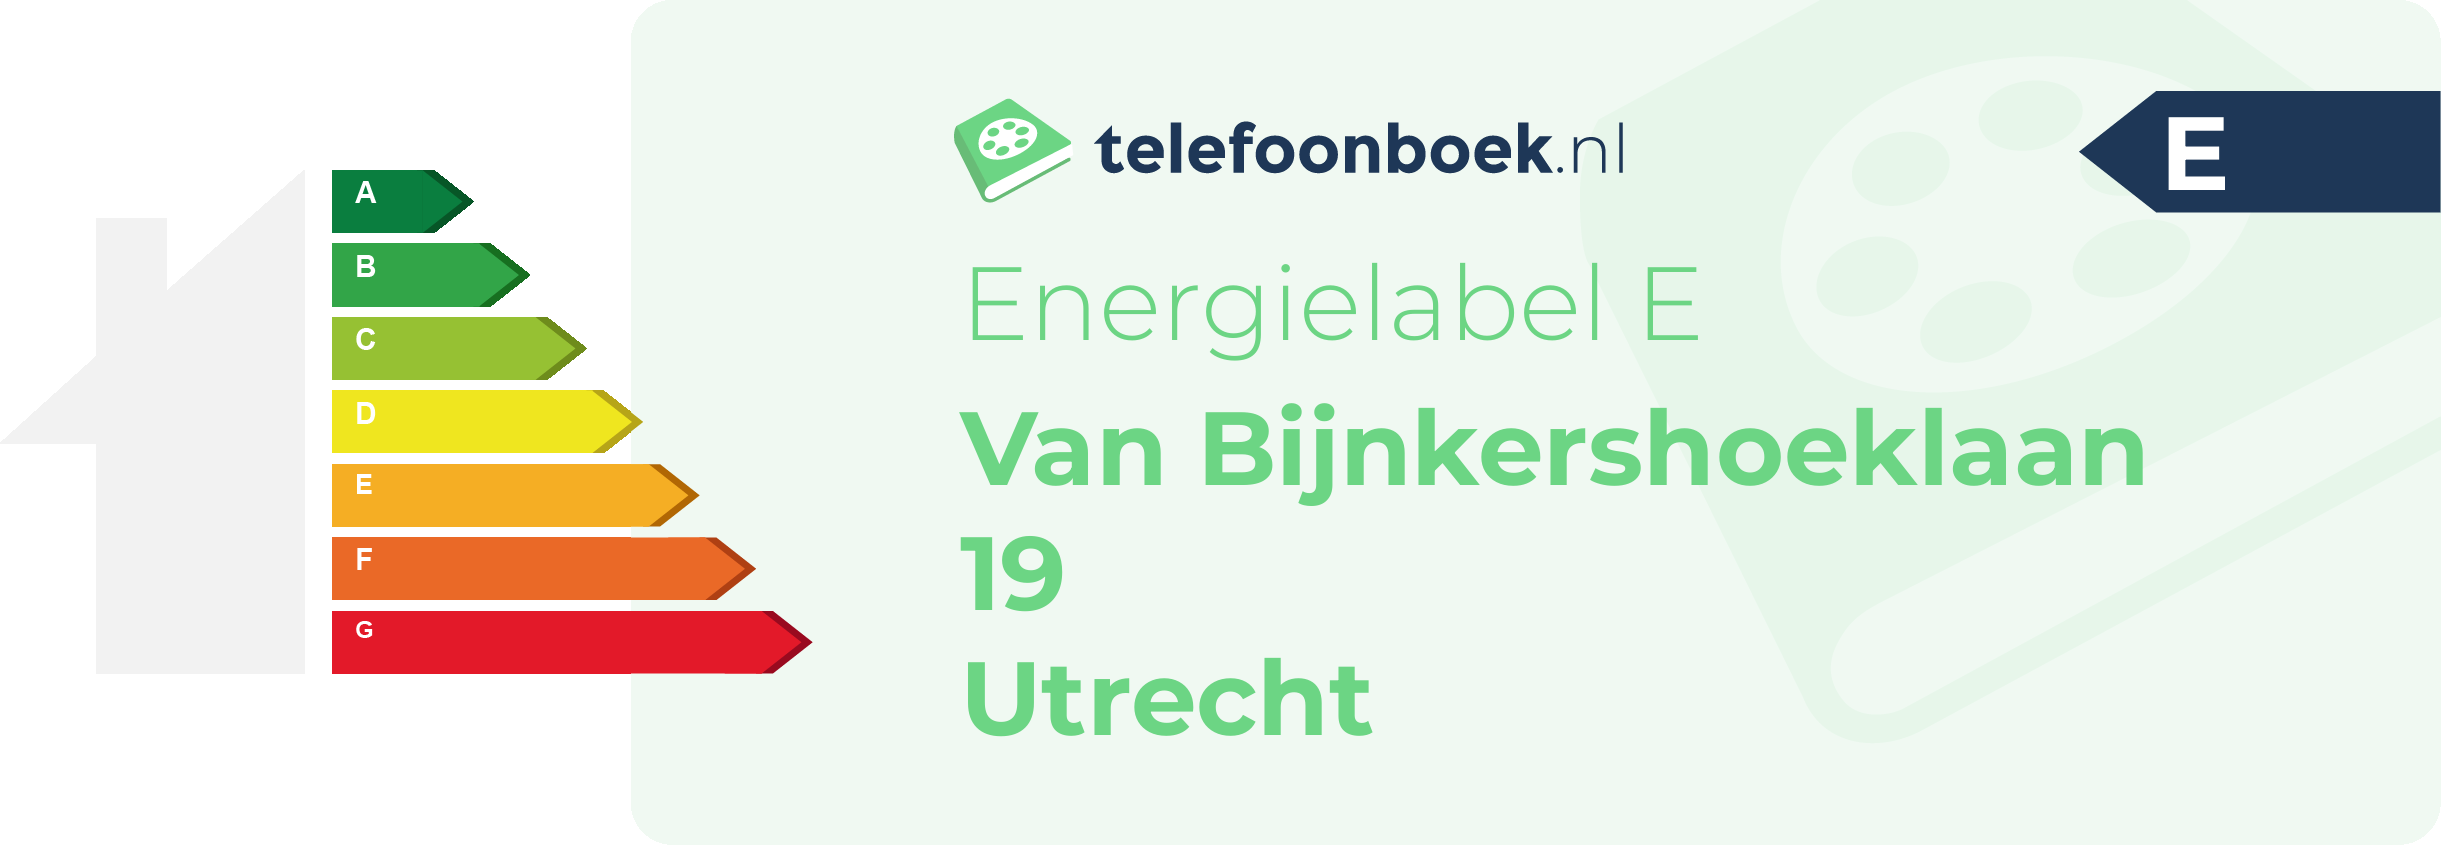 Energielabel Van Bijnkershoeklaan 19 Utrecht